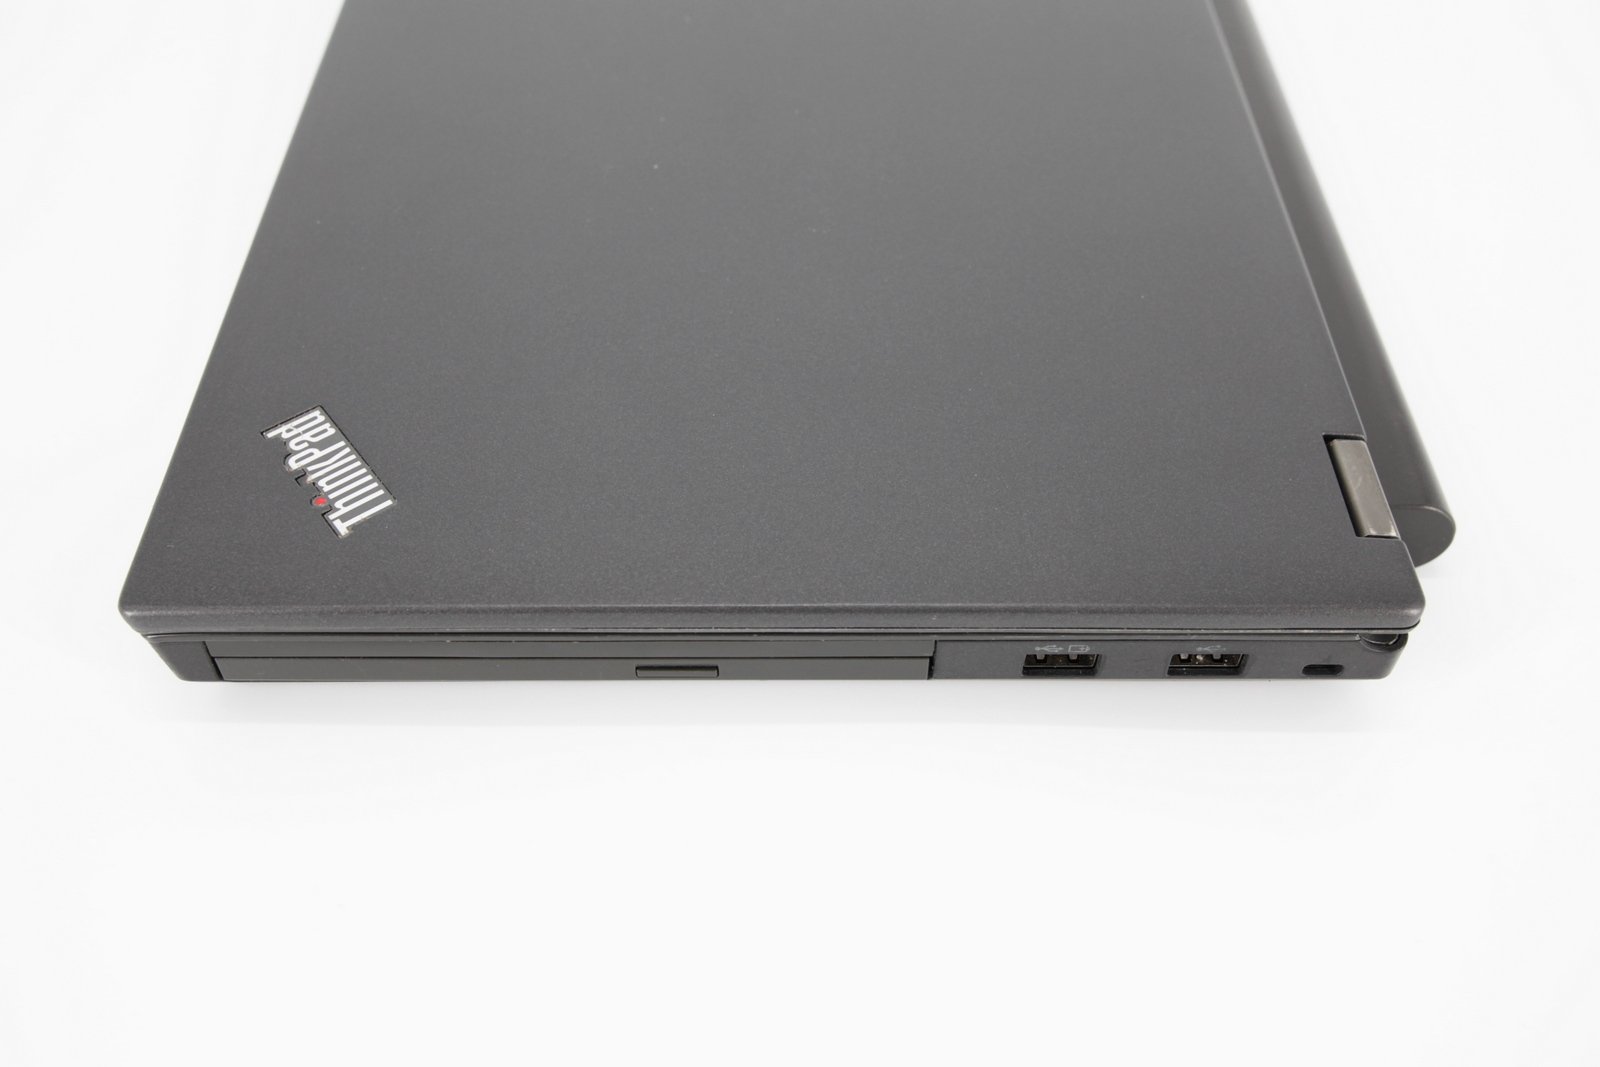 Lenovo T440P Laptop: Core i7-4600M 8GB RAM, 240GB SSD 730M, VAT - CruiseTech